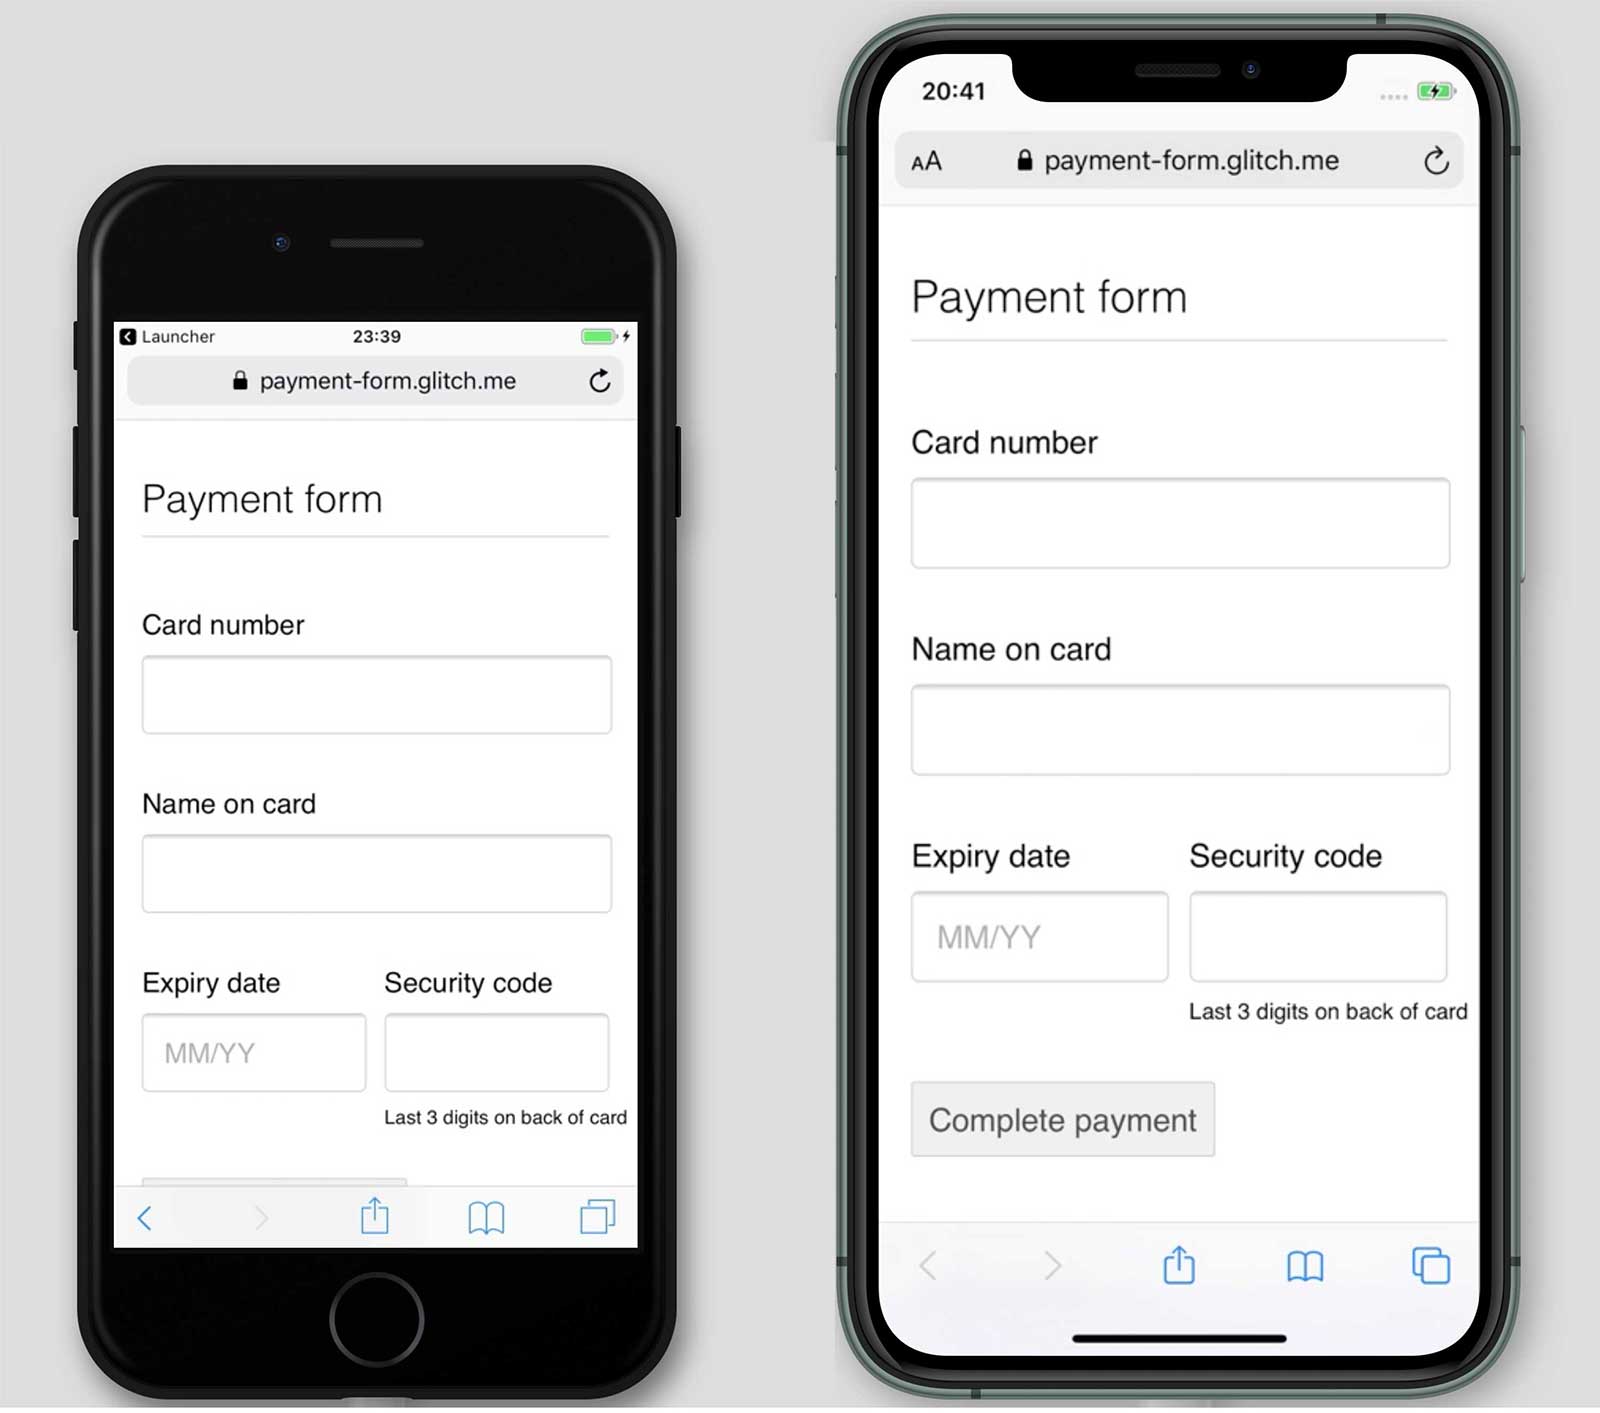 Ảnh chụp màn hình về một phương thức thanh toán, payment-form.glitch.me, trên iPhone 7 và 11. Nút Hoàn tất thanh toán xuất hiện trên iPhone 11 chứ không phải trên iPhone 7